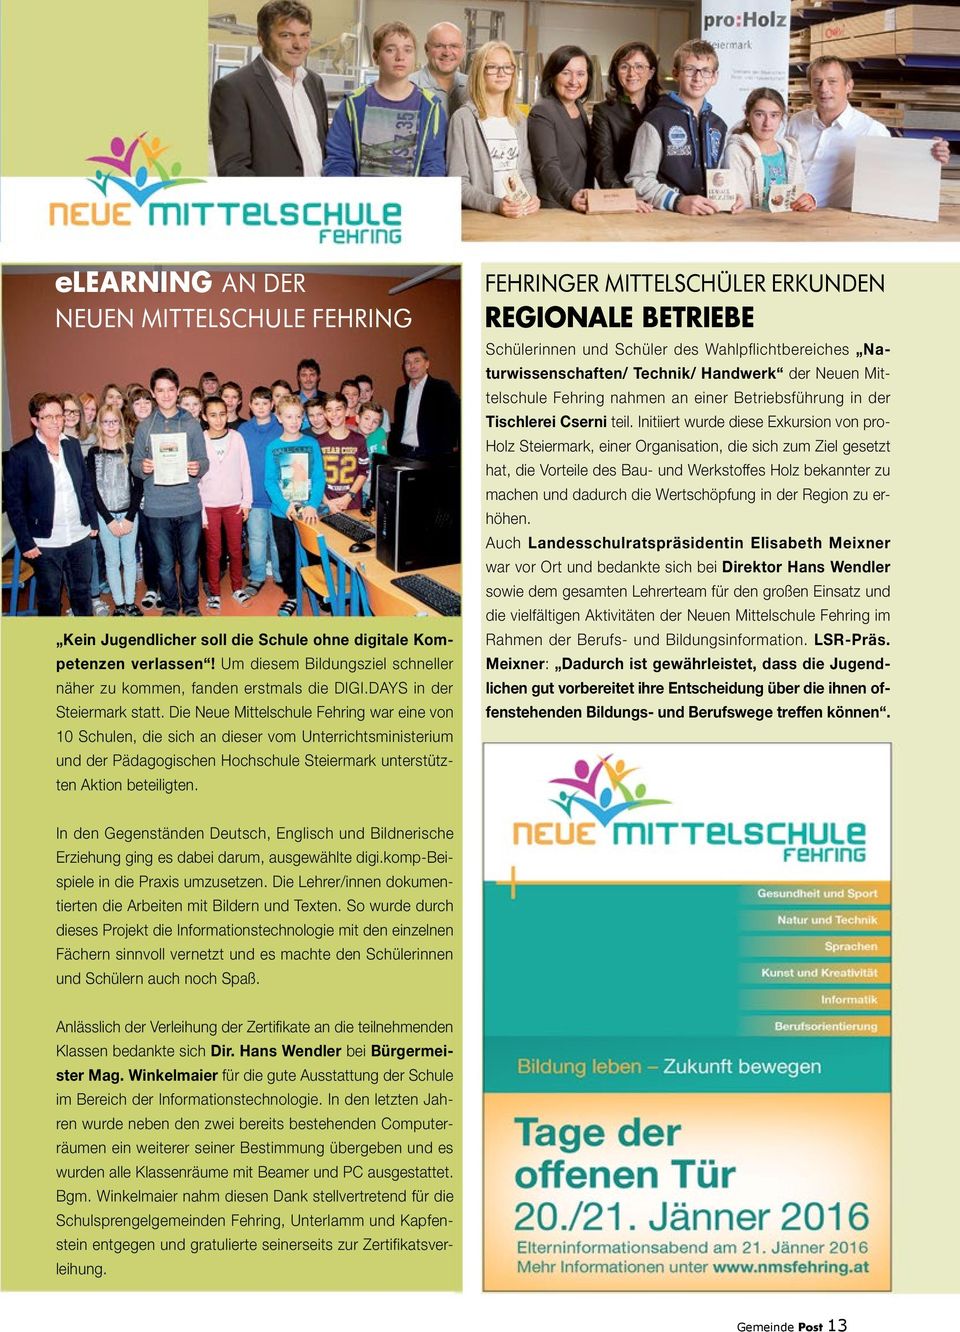 Die Neue Mittelschule Fehring war eine von 10 Schulen, die sich an dieser vom Unterrichtsministerium und der Pädagogischen Hochschule Steiermark unterstützten Aktion beteiligten.